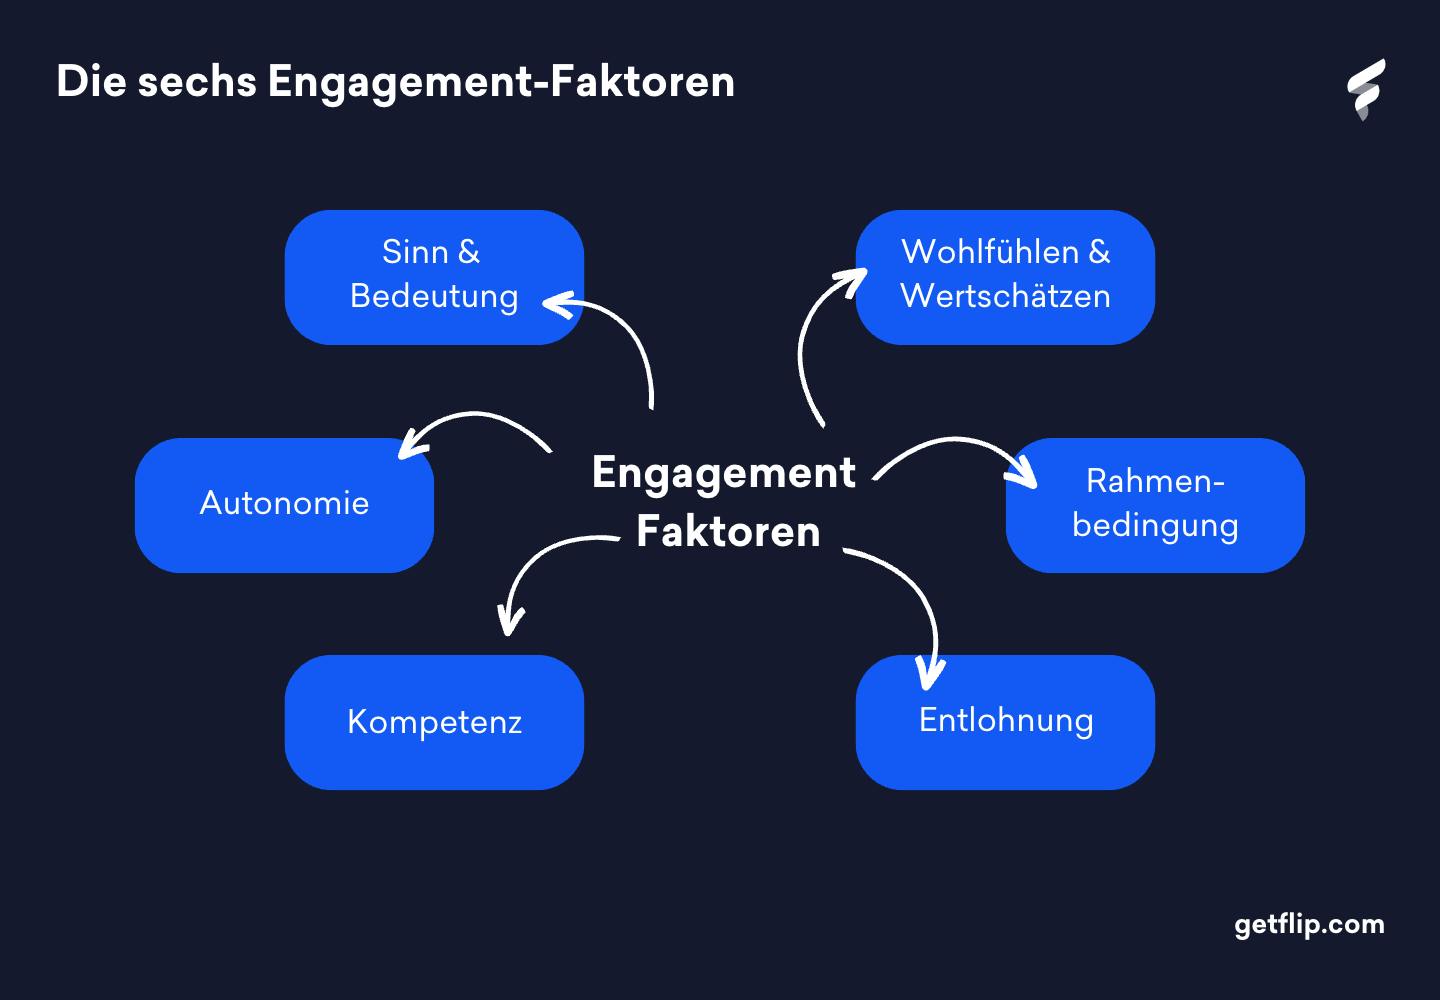 Die sechs Engagement-Faktoren im Überblick.